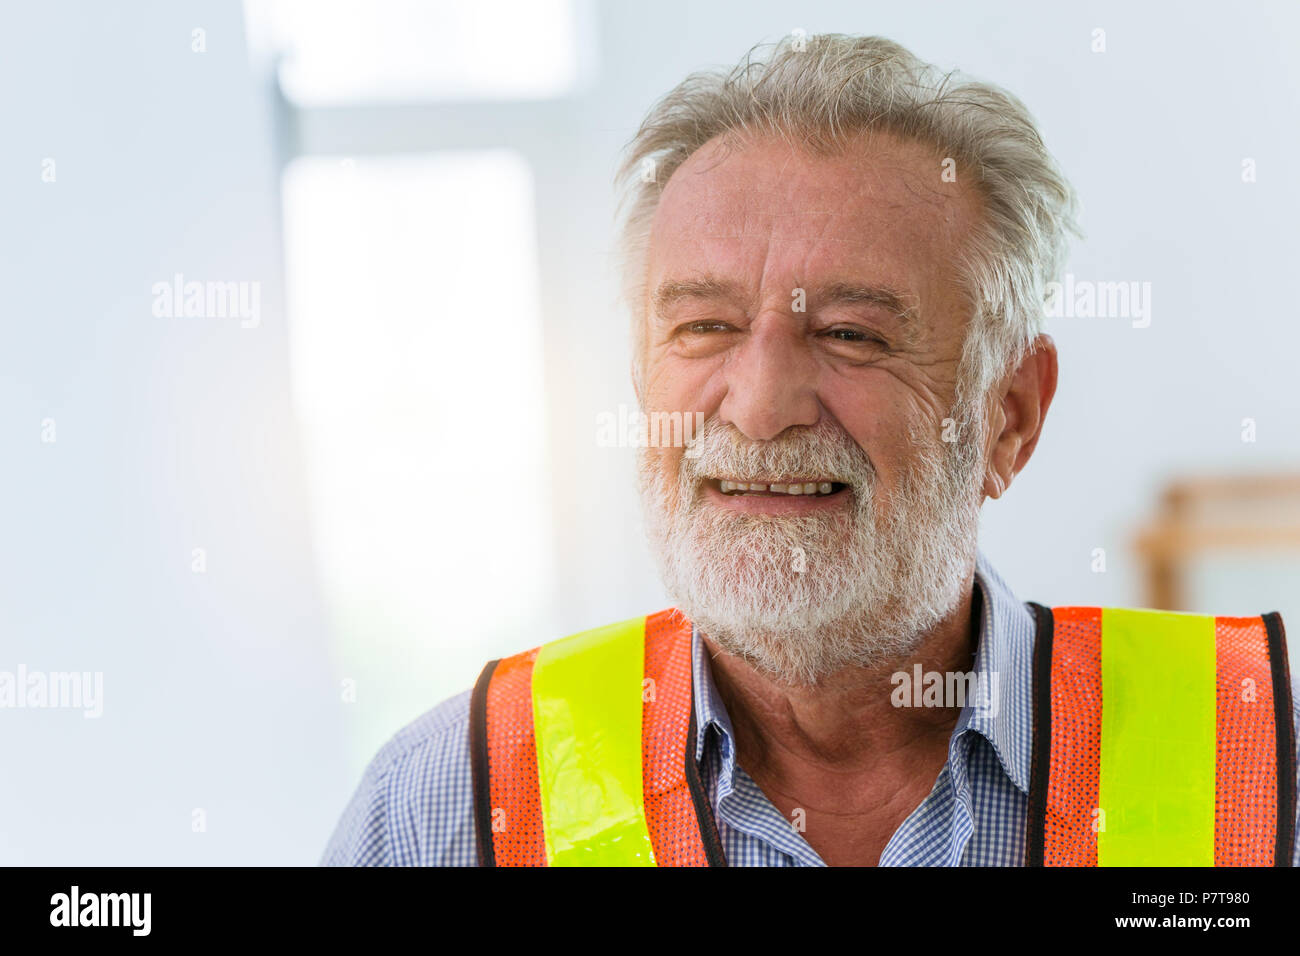 Ingeniero Senior trabajador feliz sonrisa amable felicidad concepto de trabajo. Foto de stock